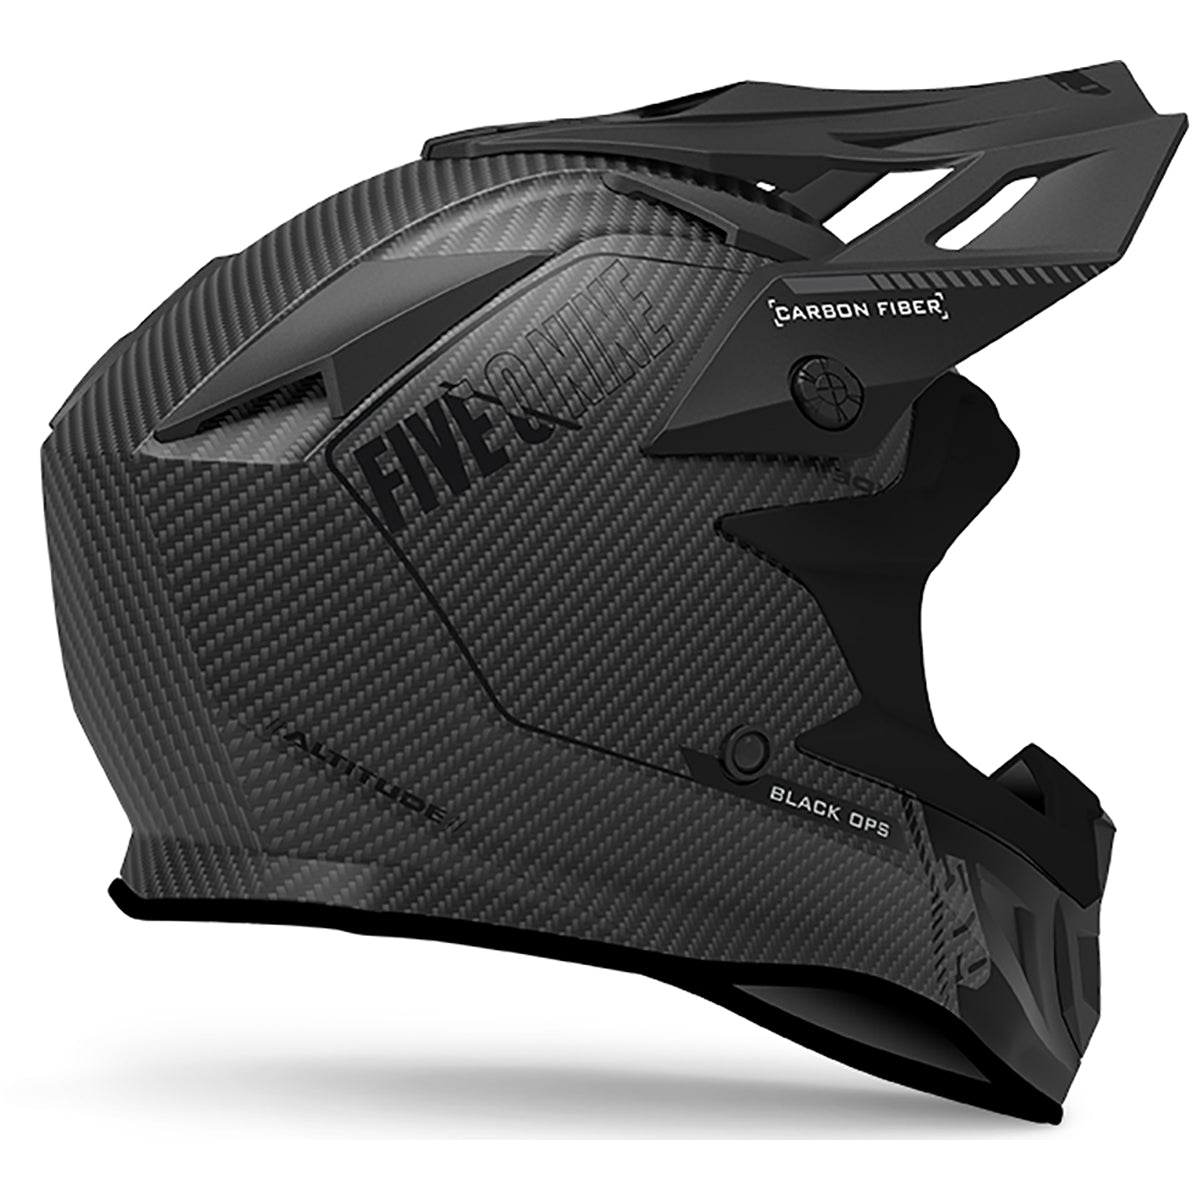 Altitude Carbon Fiber Helmet with Fidlock